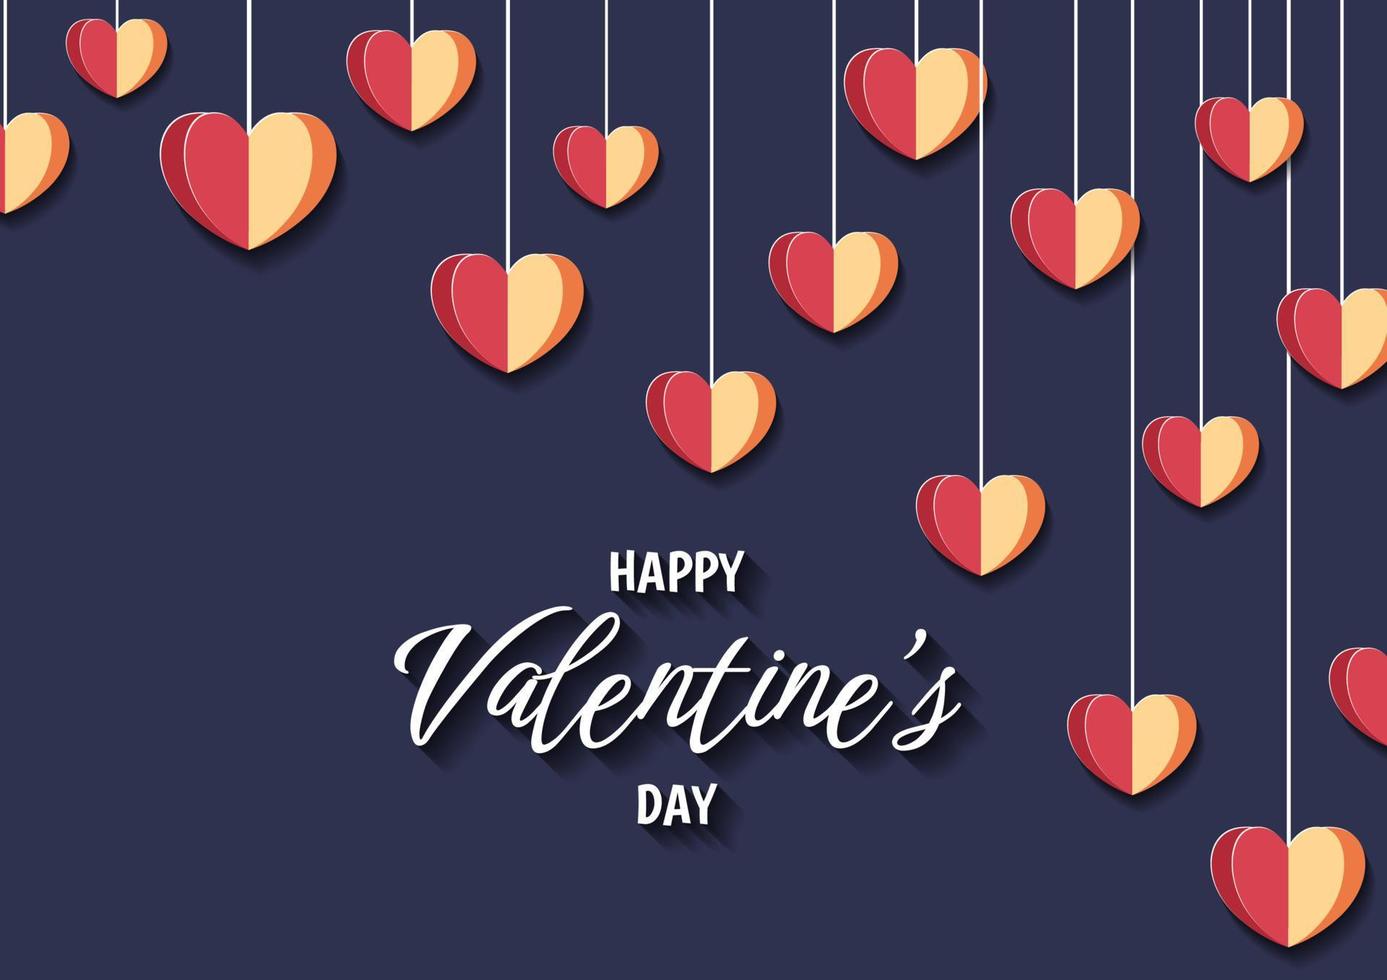 gelukkige Valentijnsdag hart frame achtergrond vector